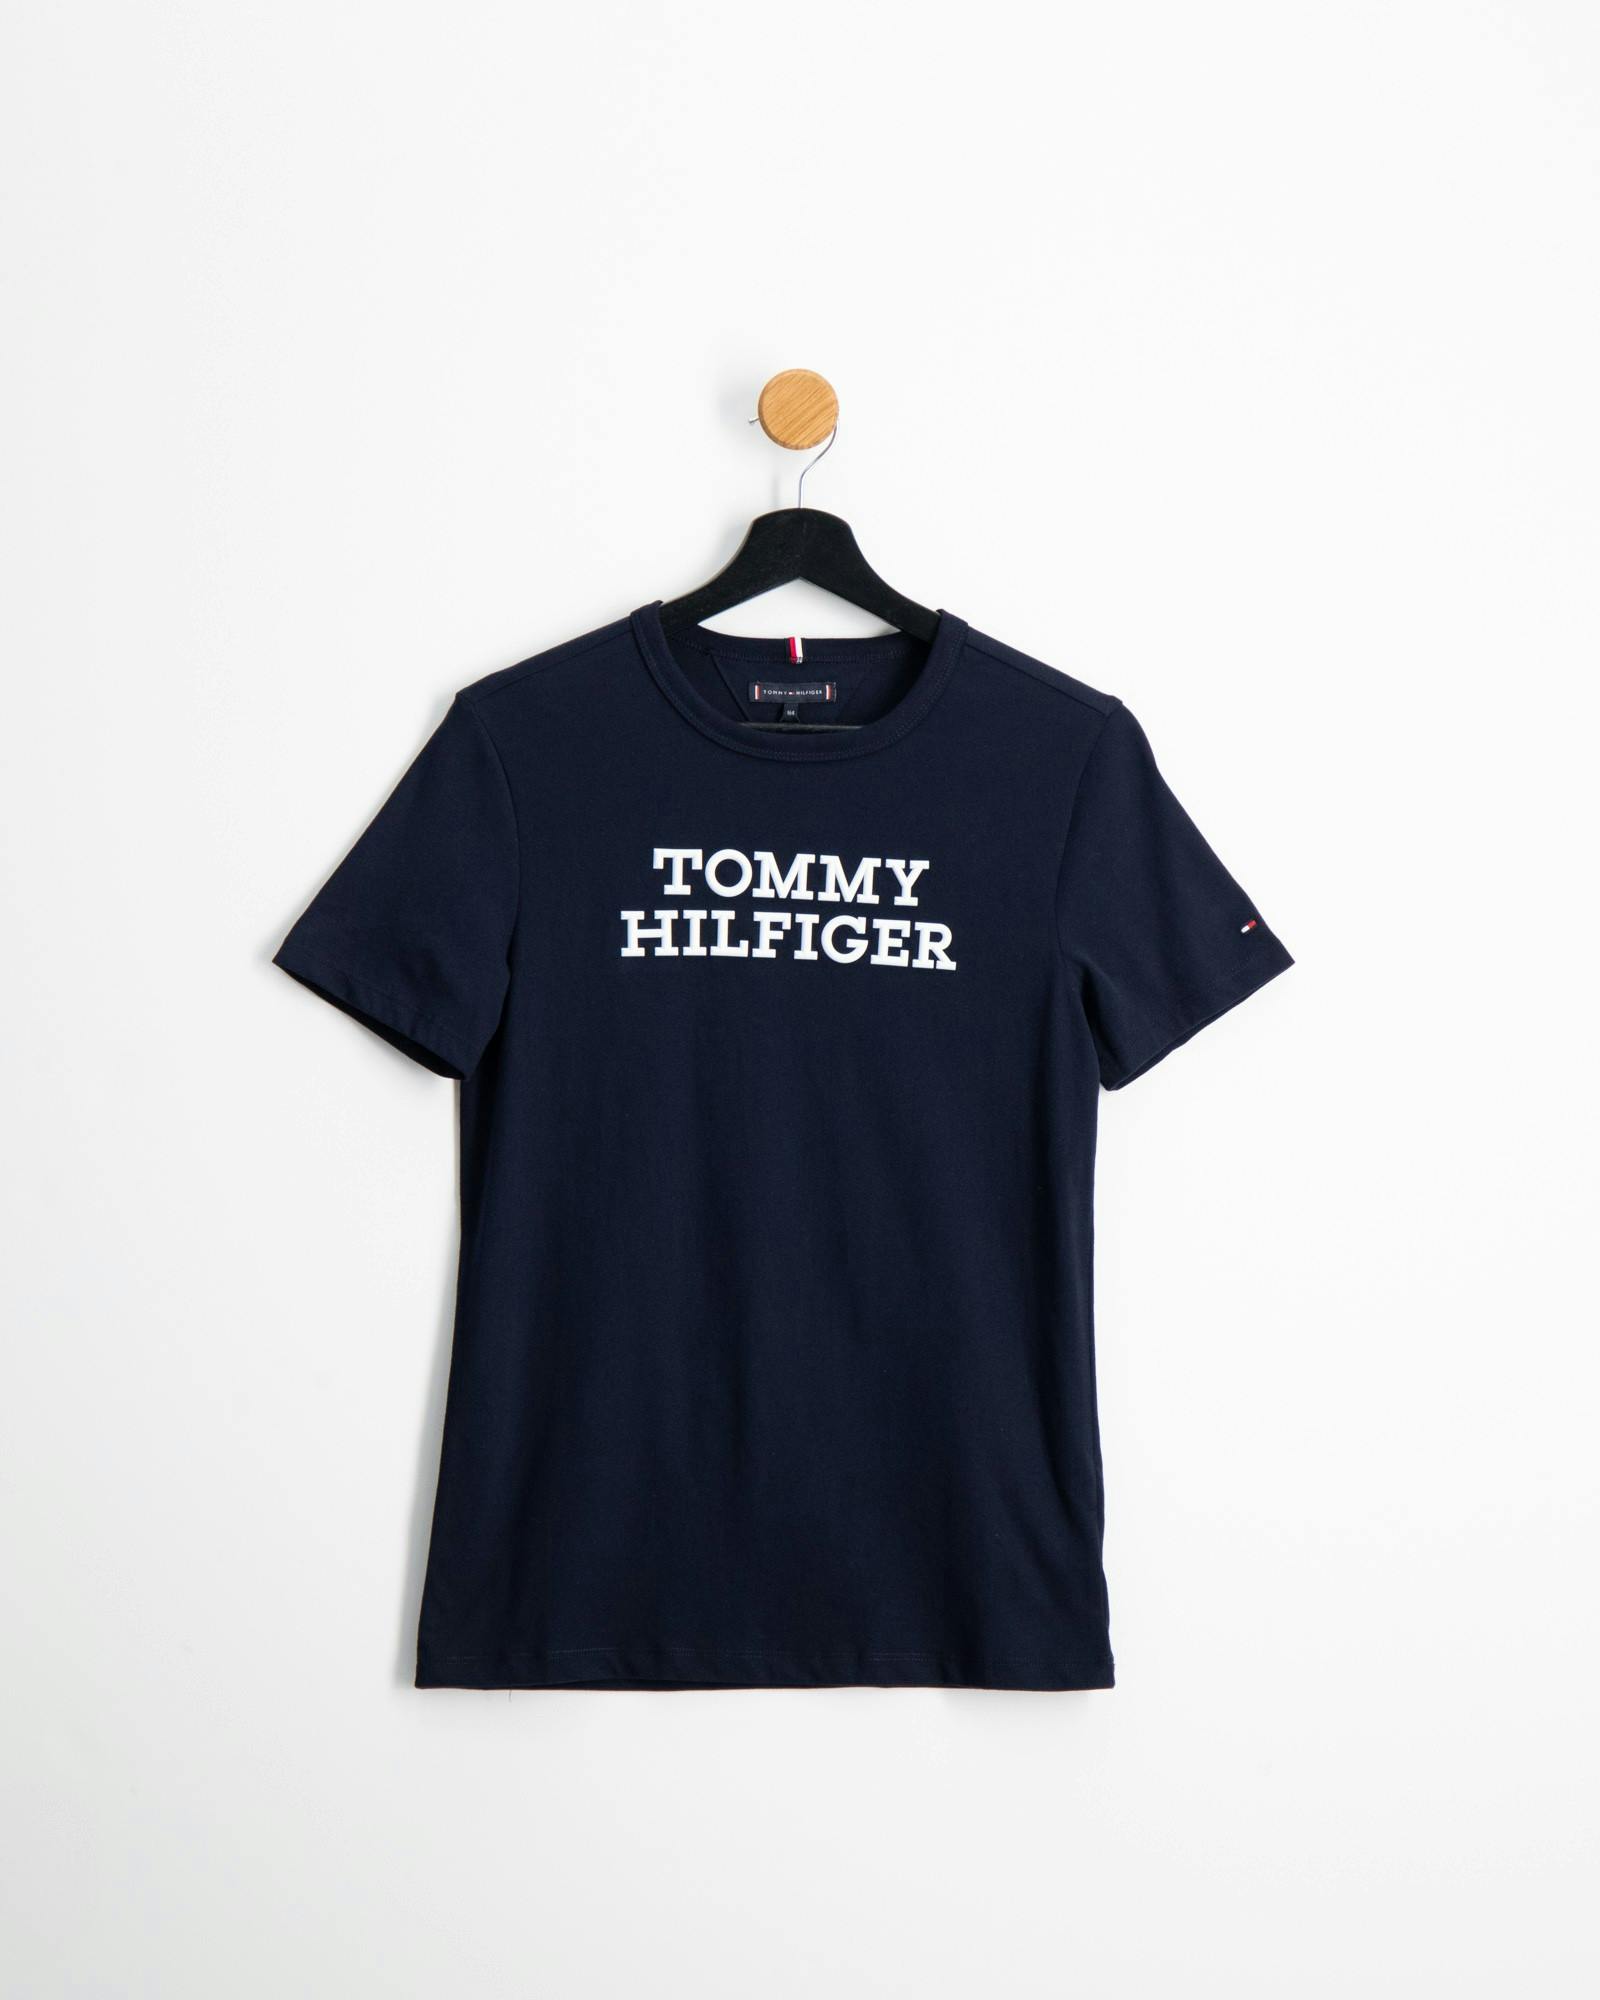 Tommy Hilfiger tøj til børn unge | Kids Brand Store